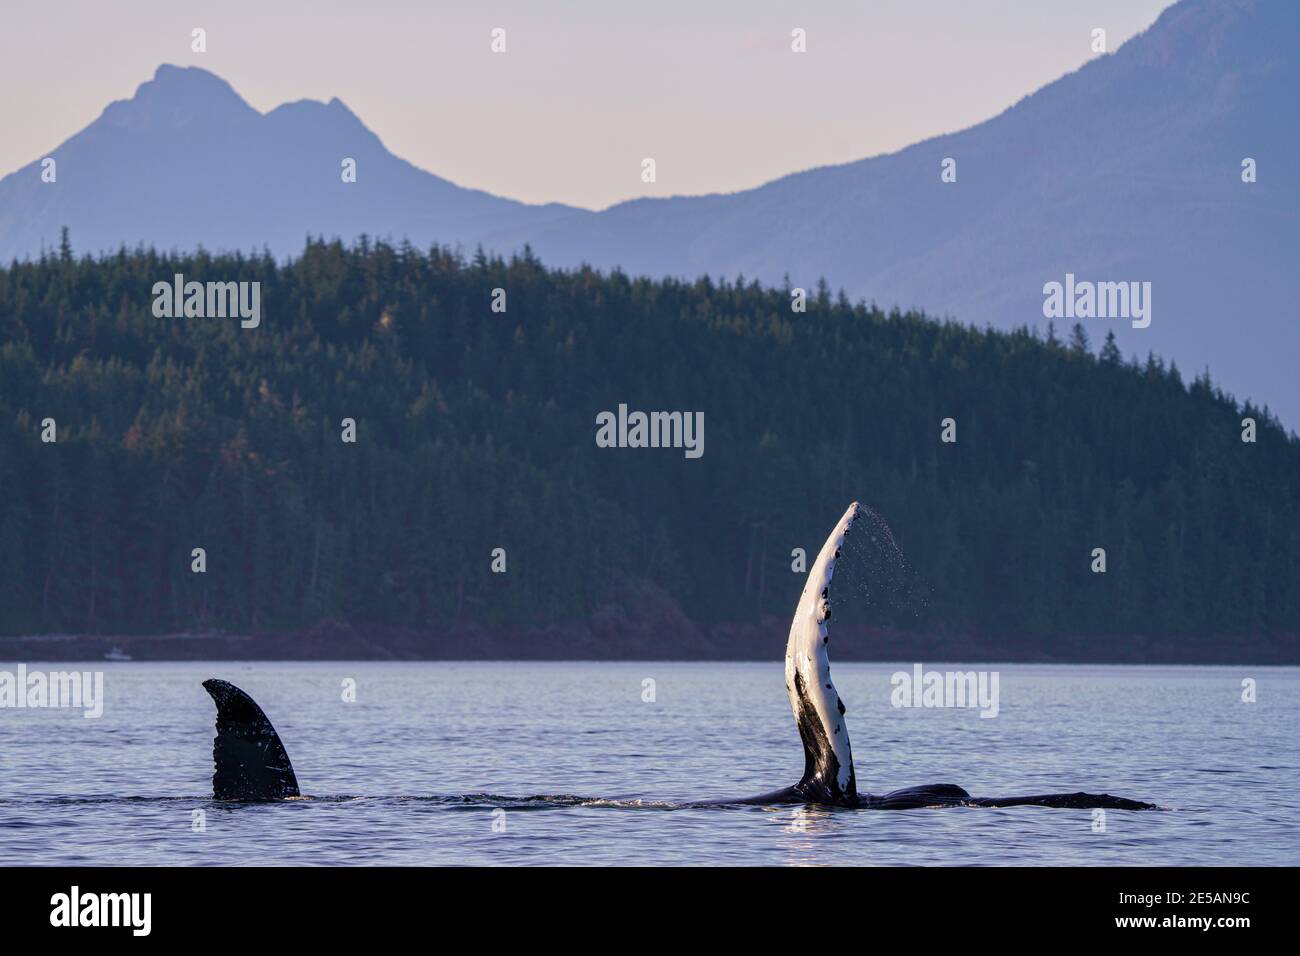 Dos ballenas jorobadas socializando en Blackfish Sound mostrando su aleta y cola-fluke, frente al norte de la isla de Vancouver, Territorio de las primeras Naciones, británico Foto de stock